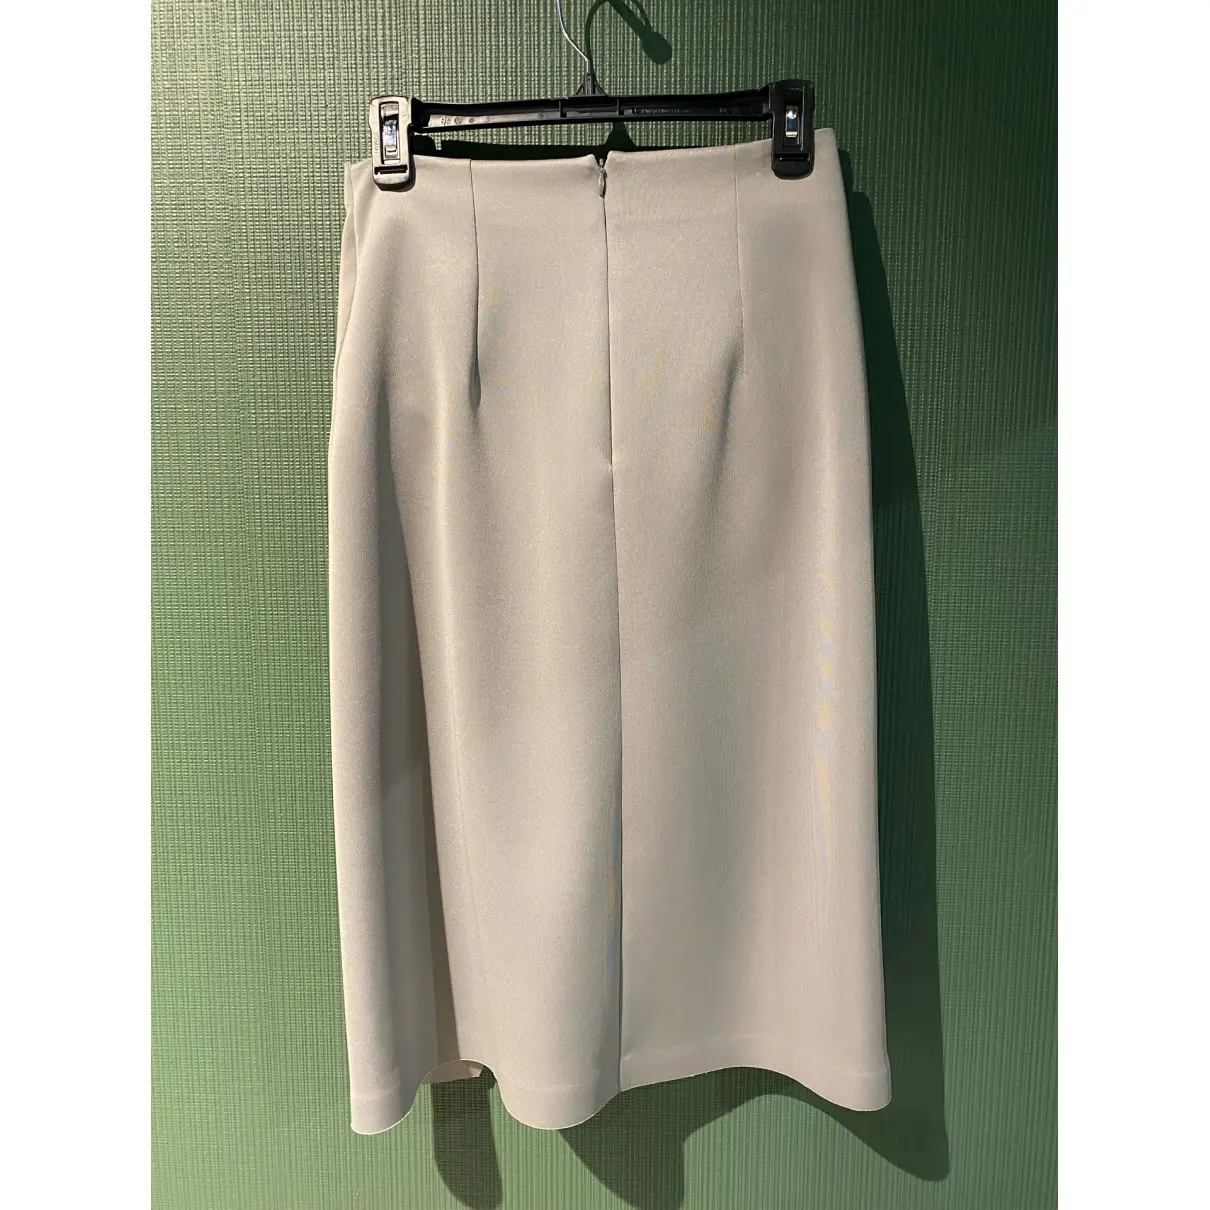 Buy Off-White Mid-length skirt online